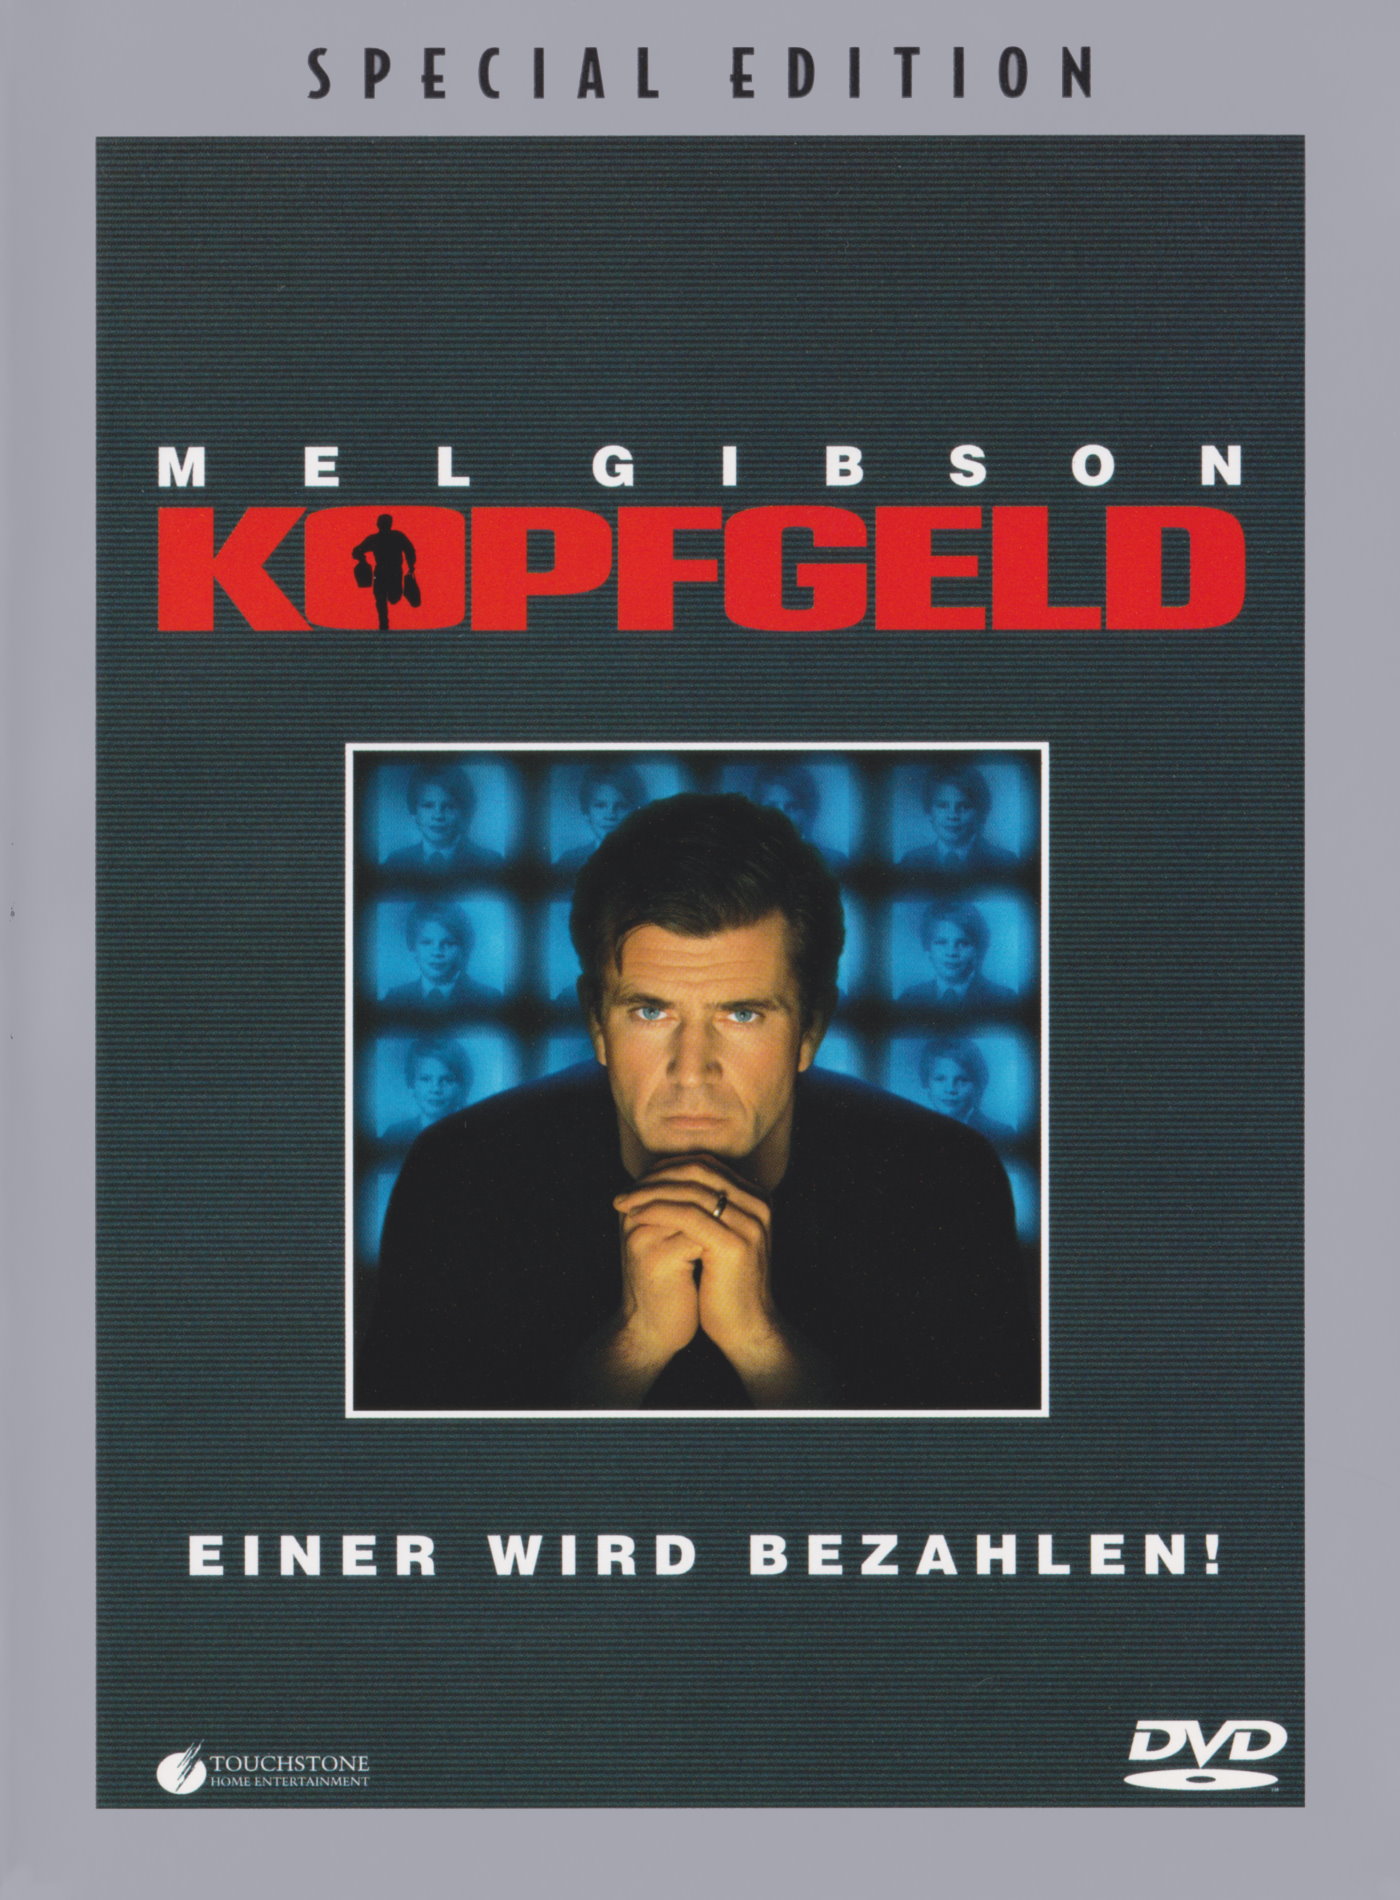 Cover - Kopfgeld.jpg